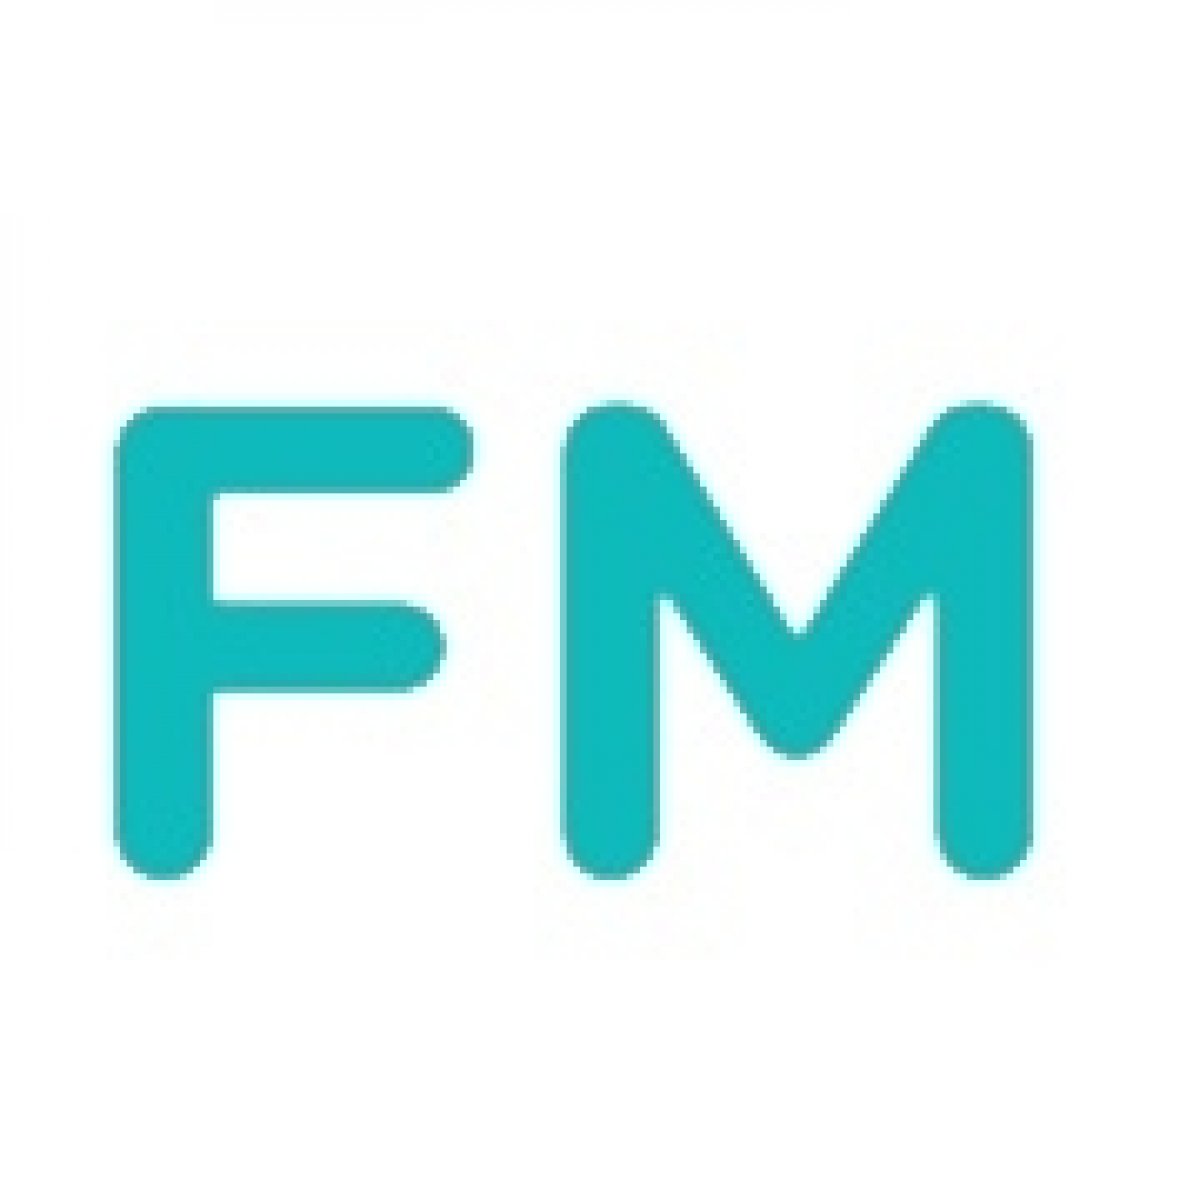 FM rádio